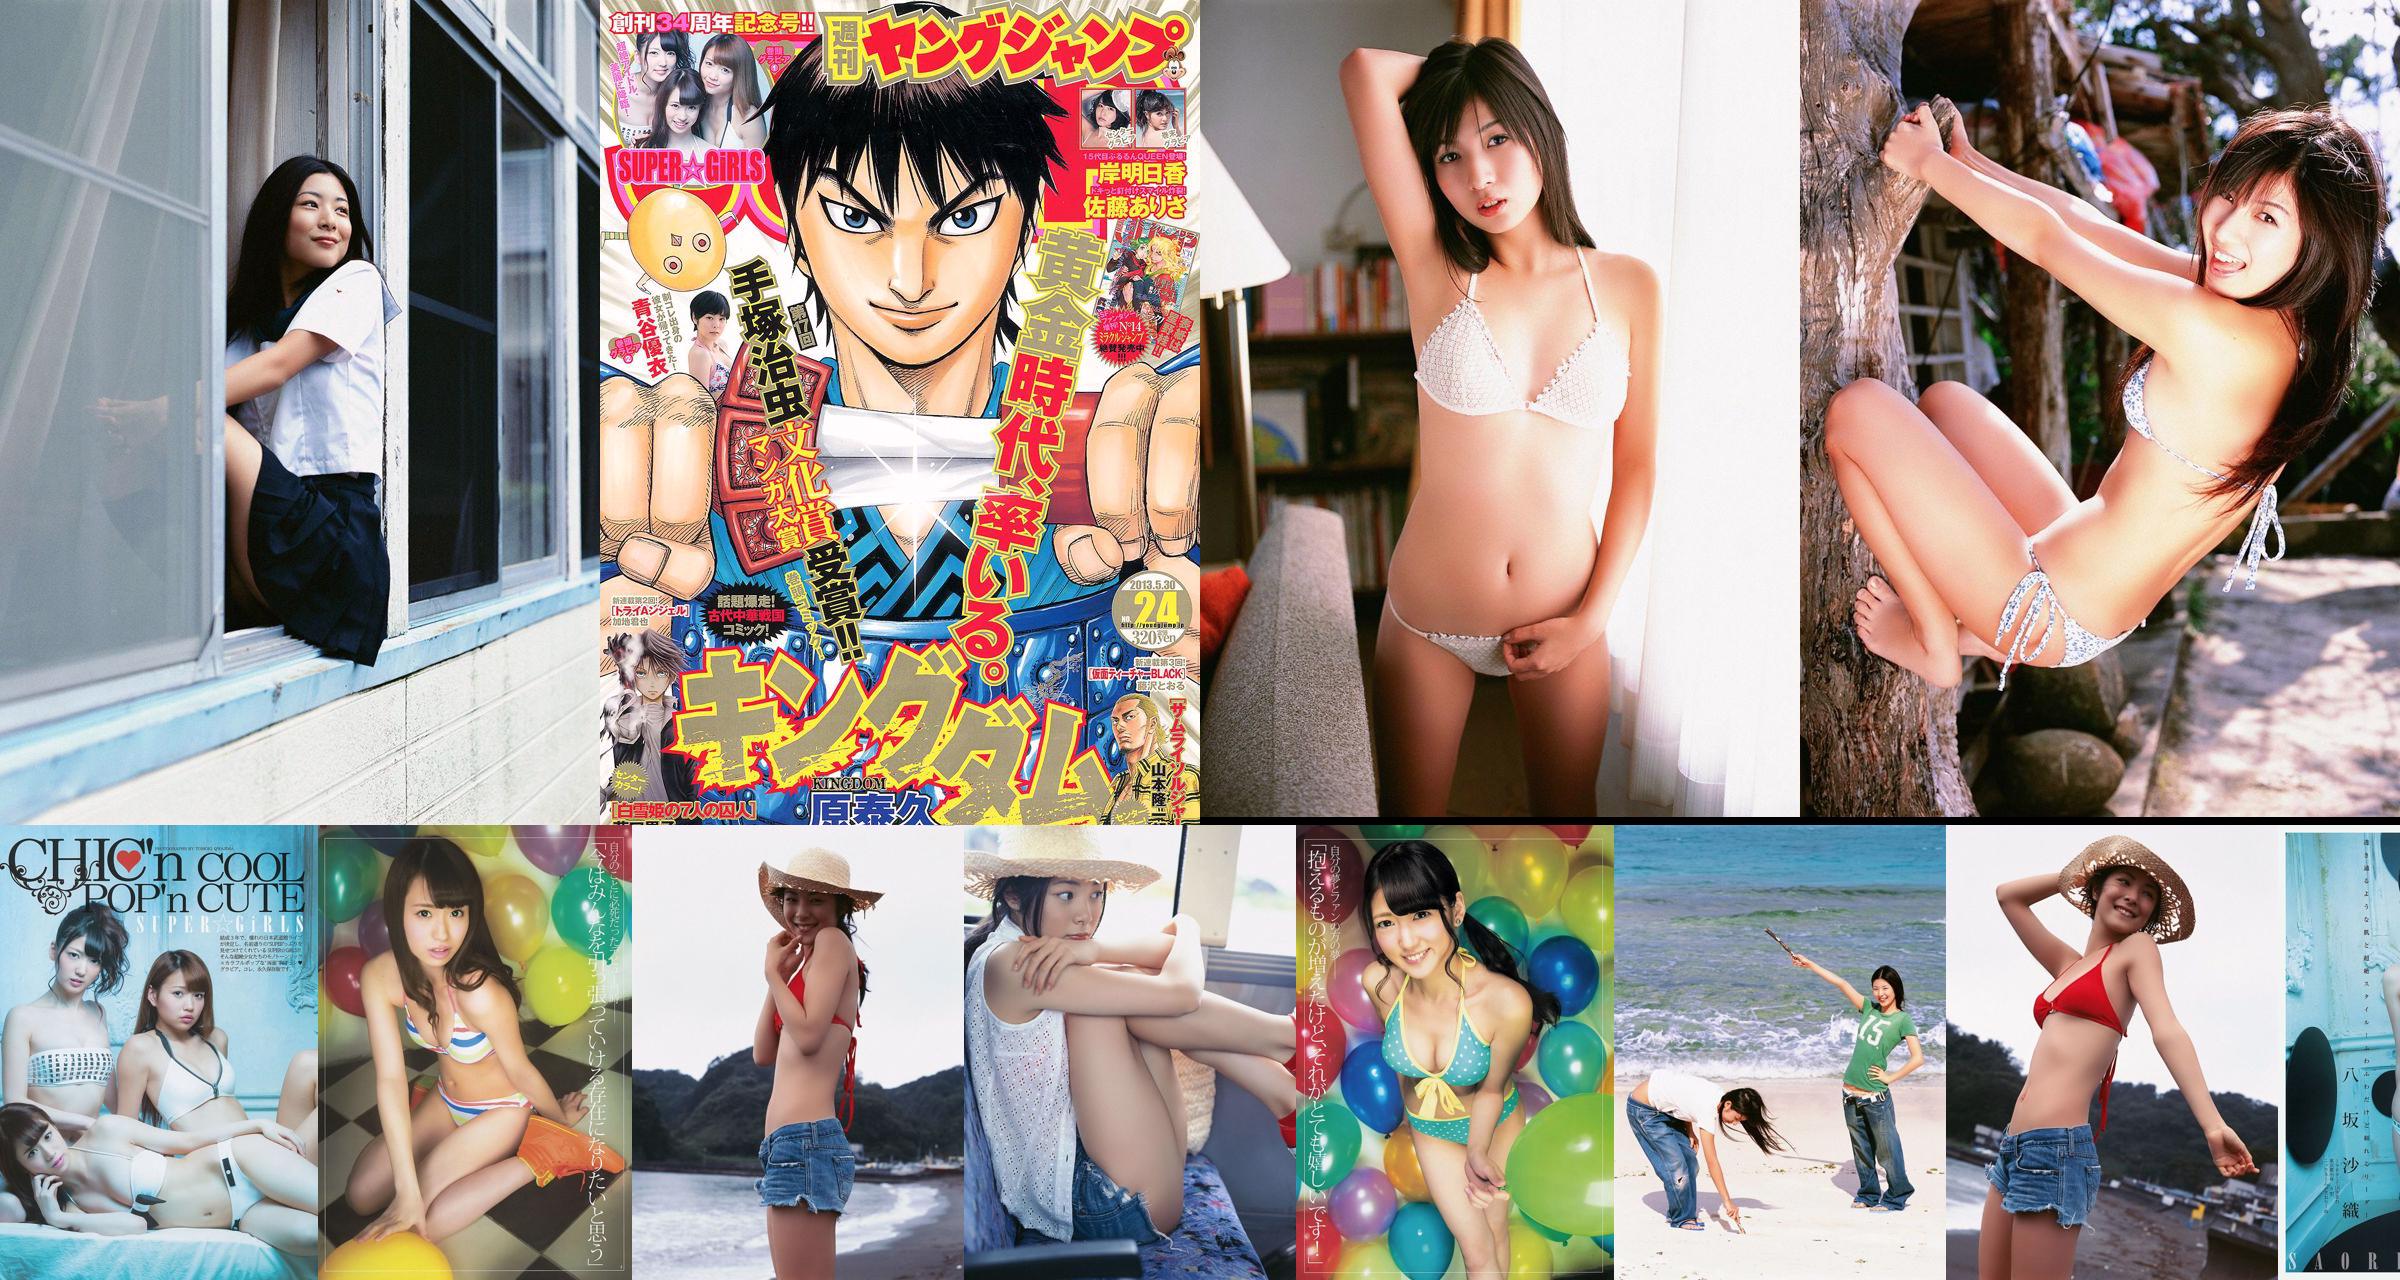 SUPER ☆ GiRLS Yui Aoya Asuka Kishi Arisa Sato [Weekly Young Jump] 2013 No.24 Photographie No.1982c4 Page 1